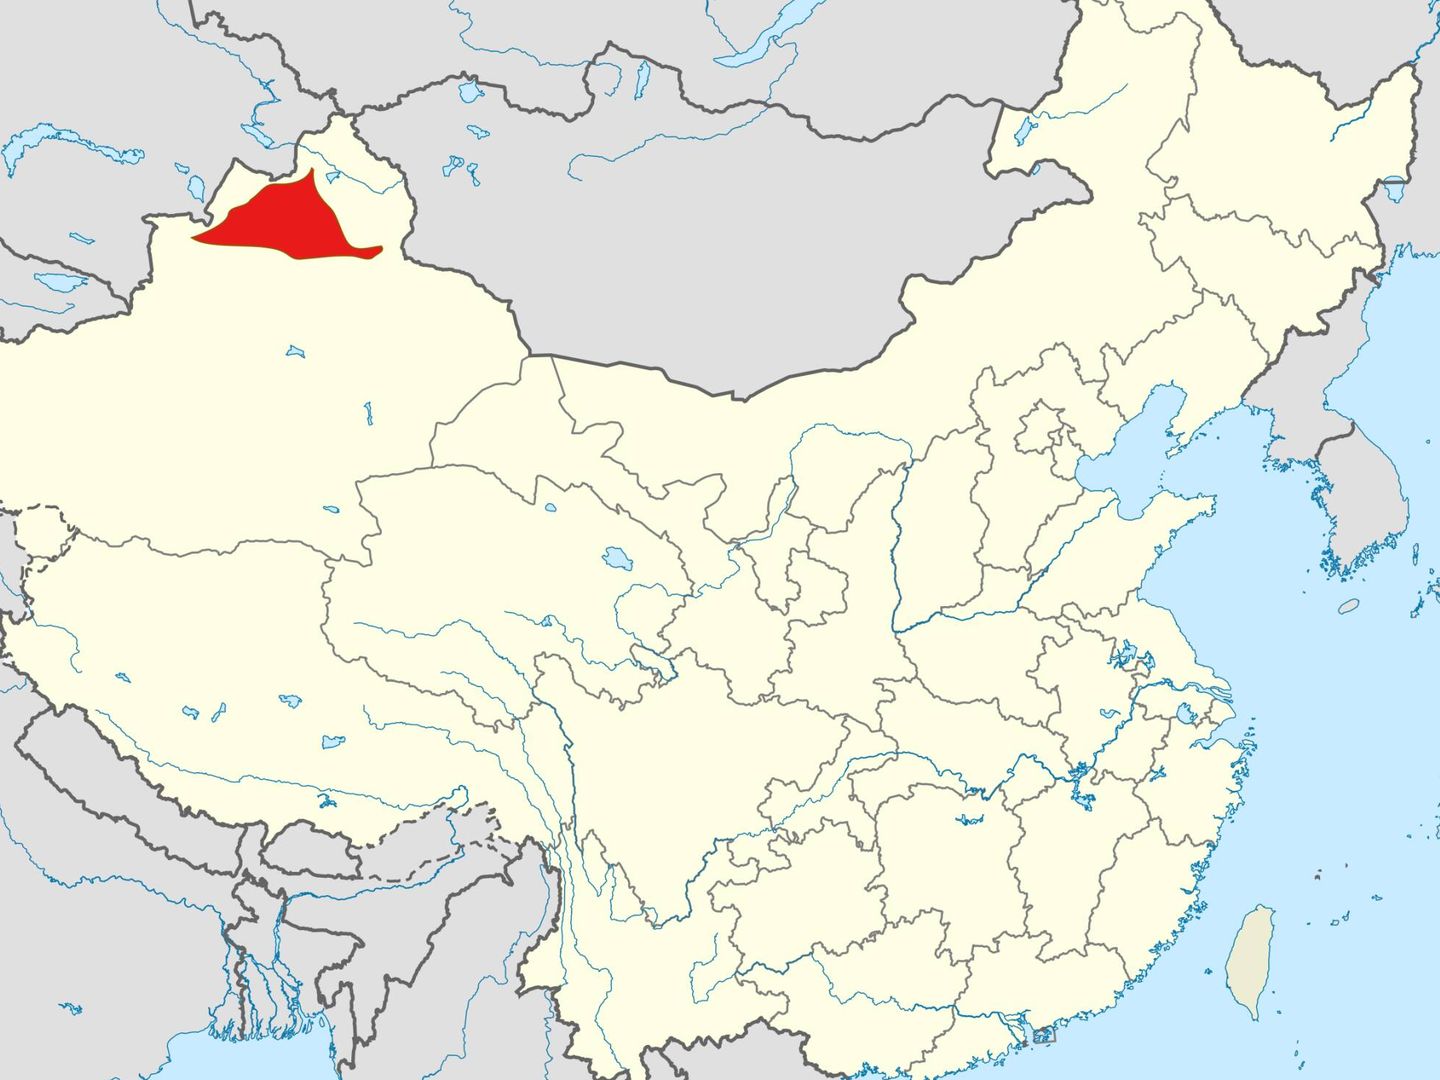 Localización del Junggar Basin en rojo. (Wikipedia - Alexnlk)